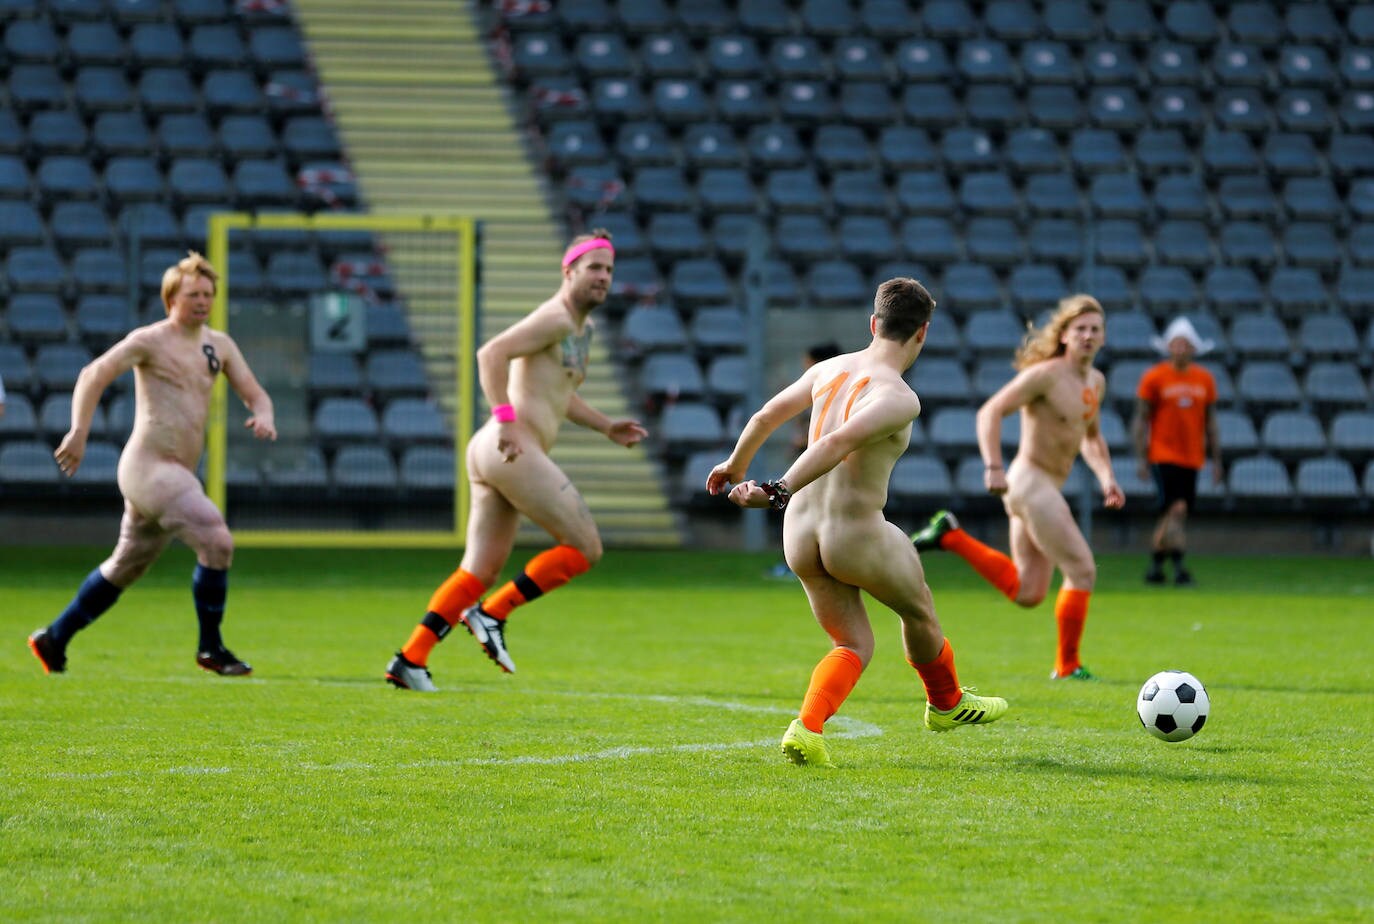 Jugadoras de futbol desnuda